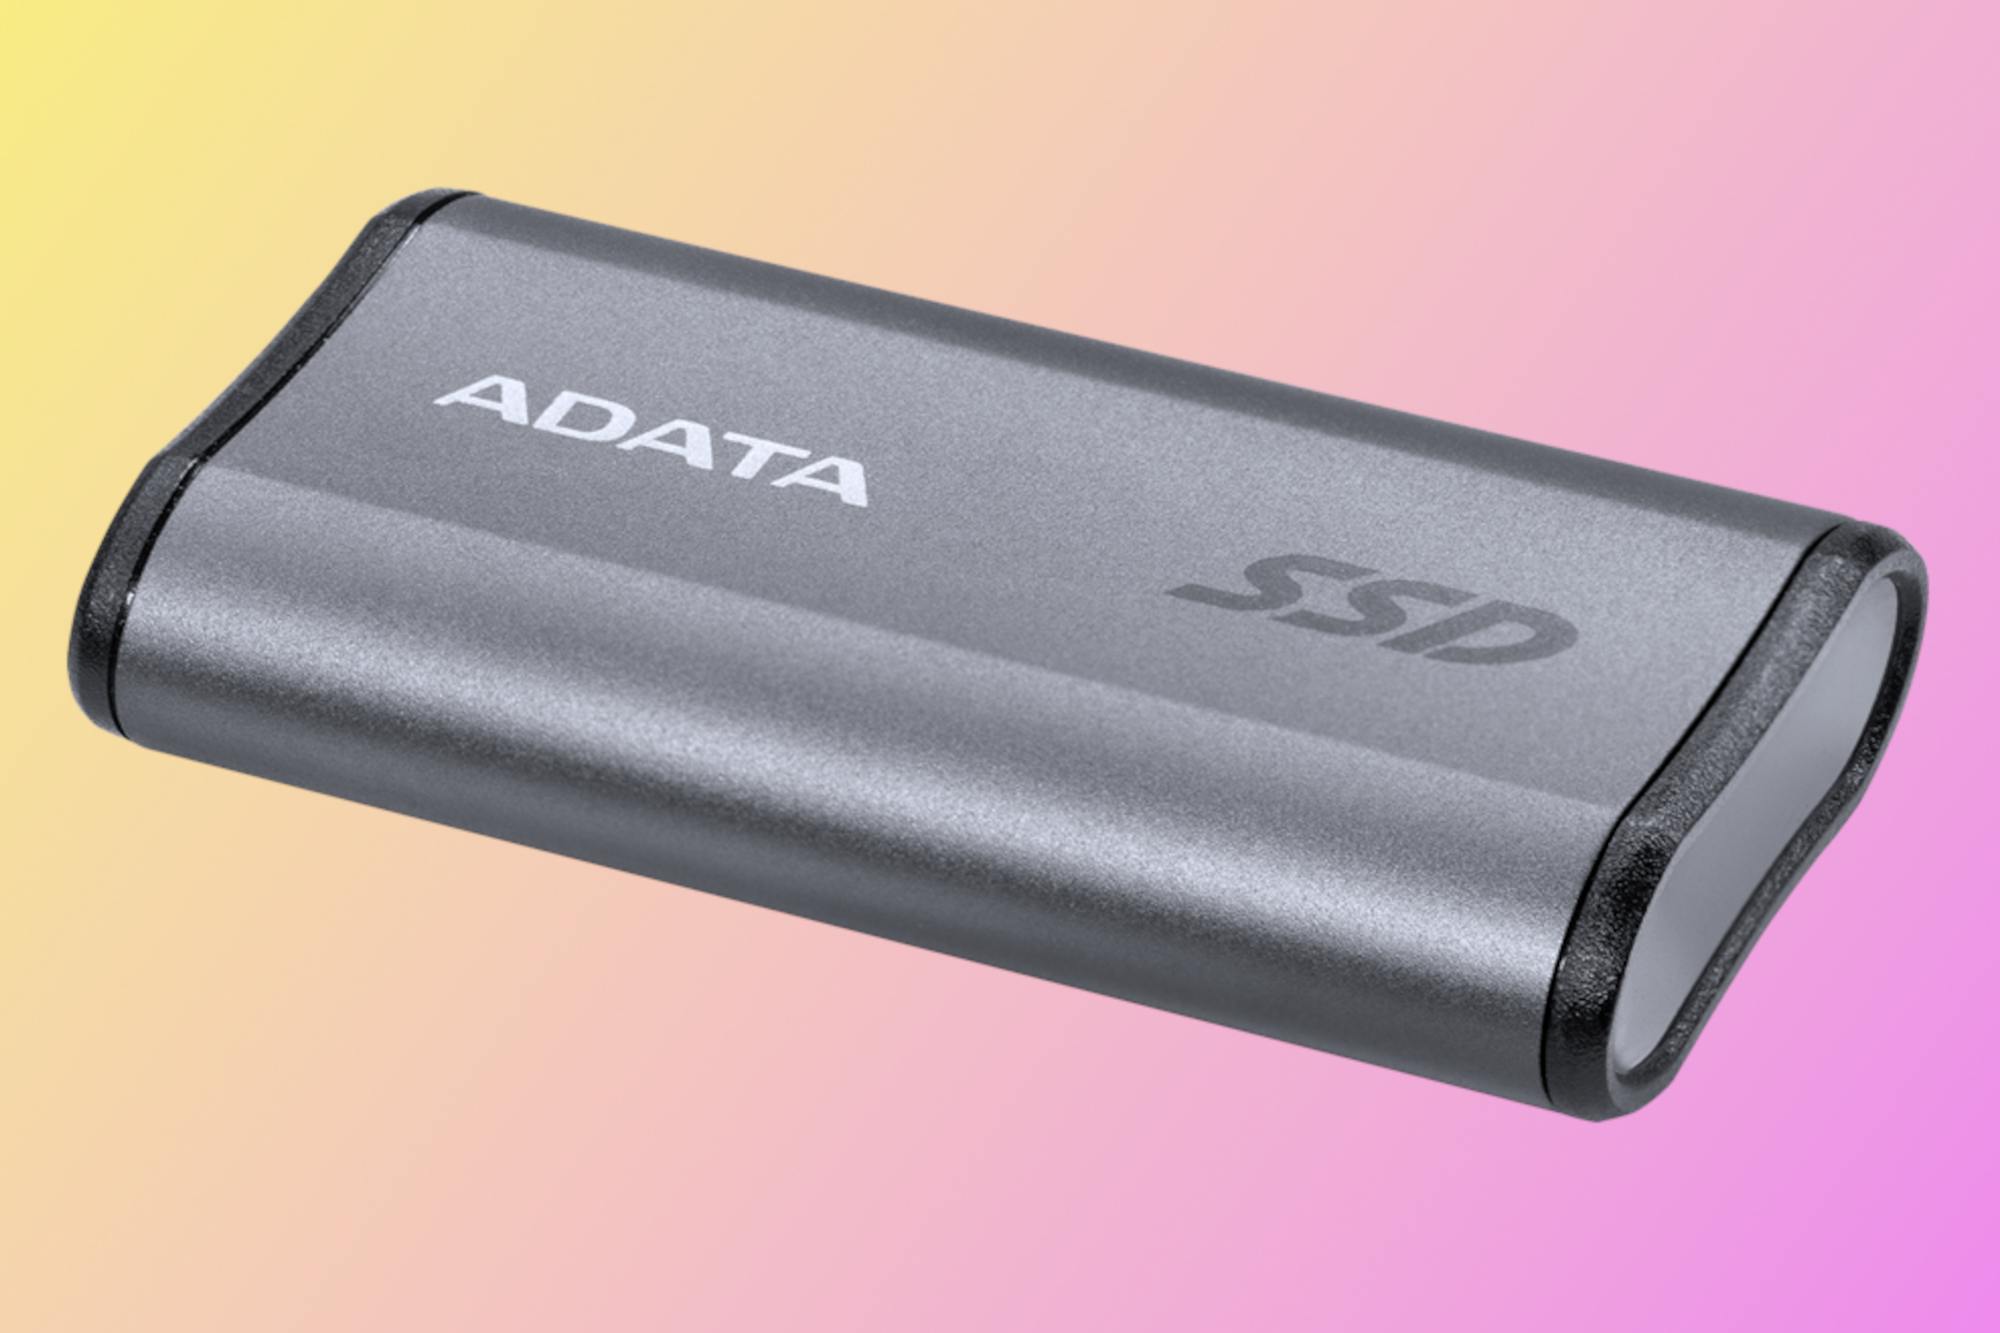 Adata Elite SE880 SSD - Most portable external drive